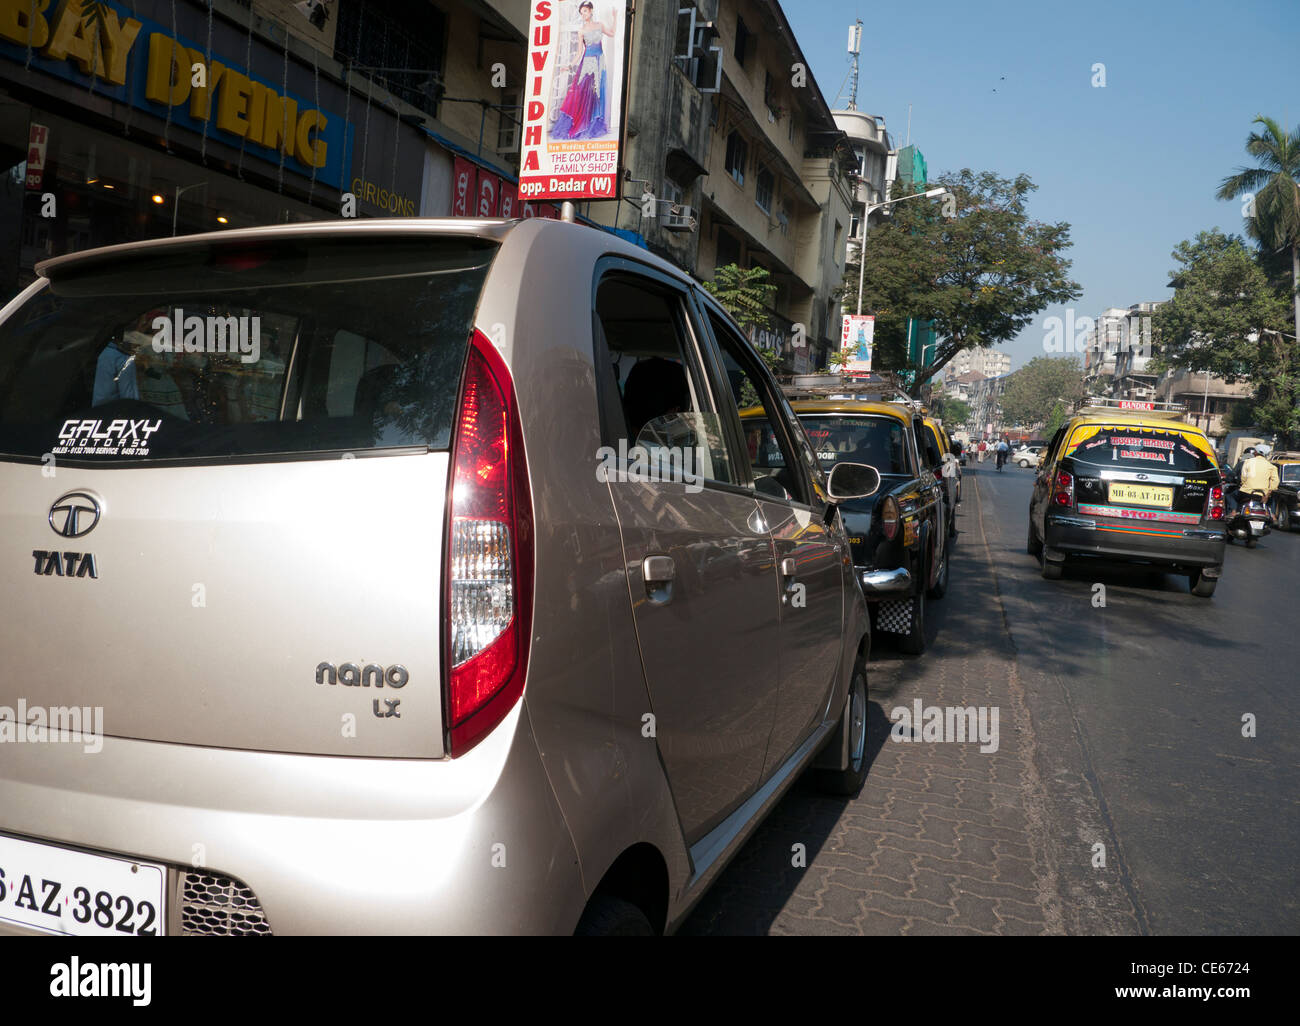 Ein Tata Nano Auto auf der Straße in Mumbai Indien Stockfoto